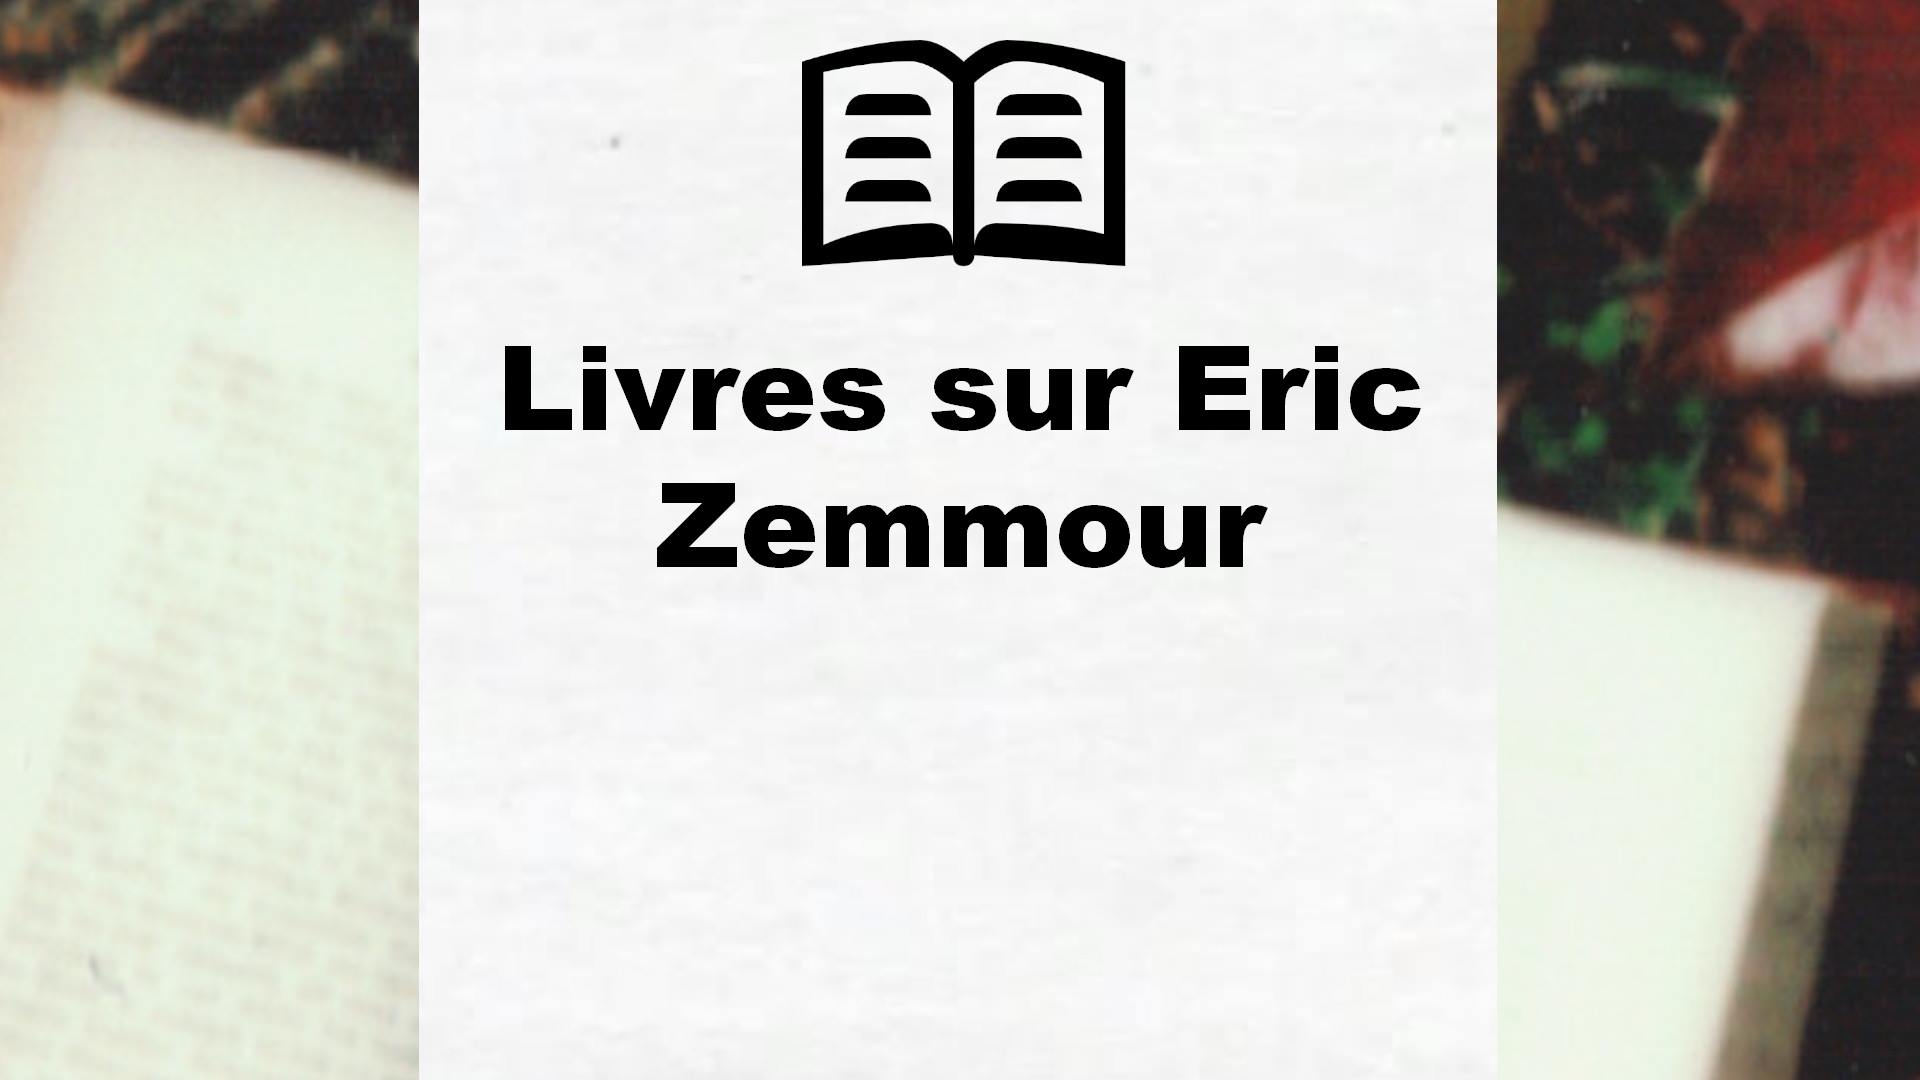 Livres sur Eric Zemmour